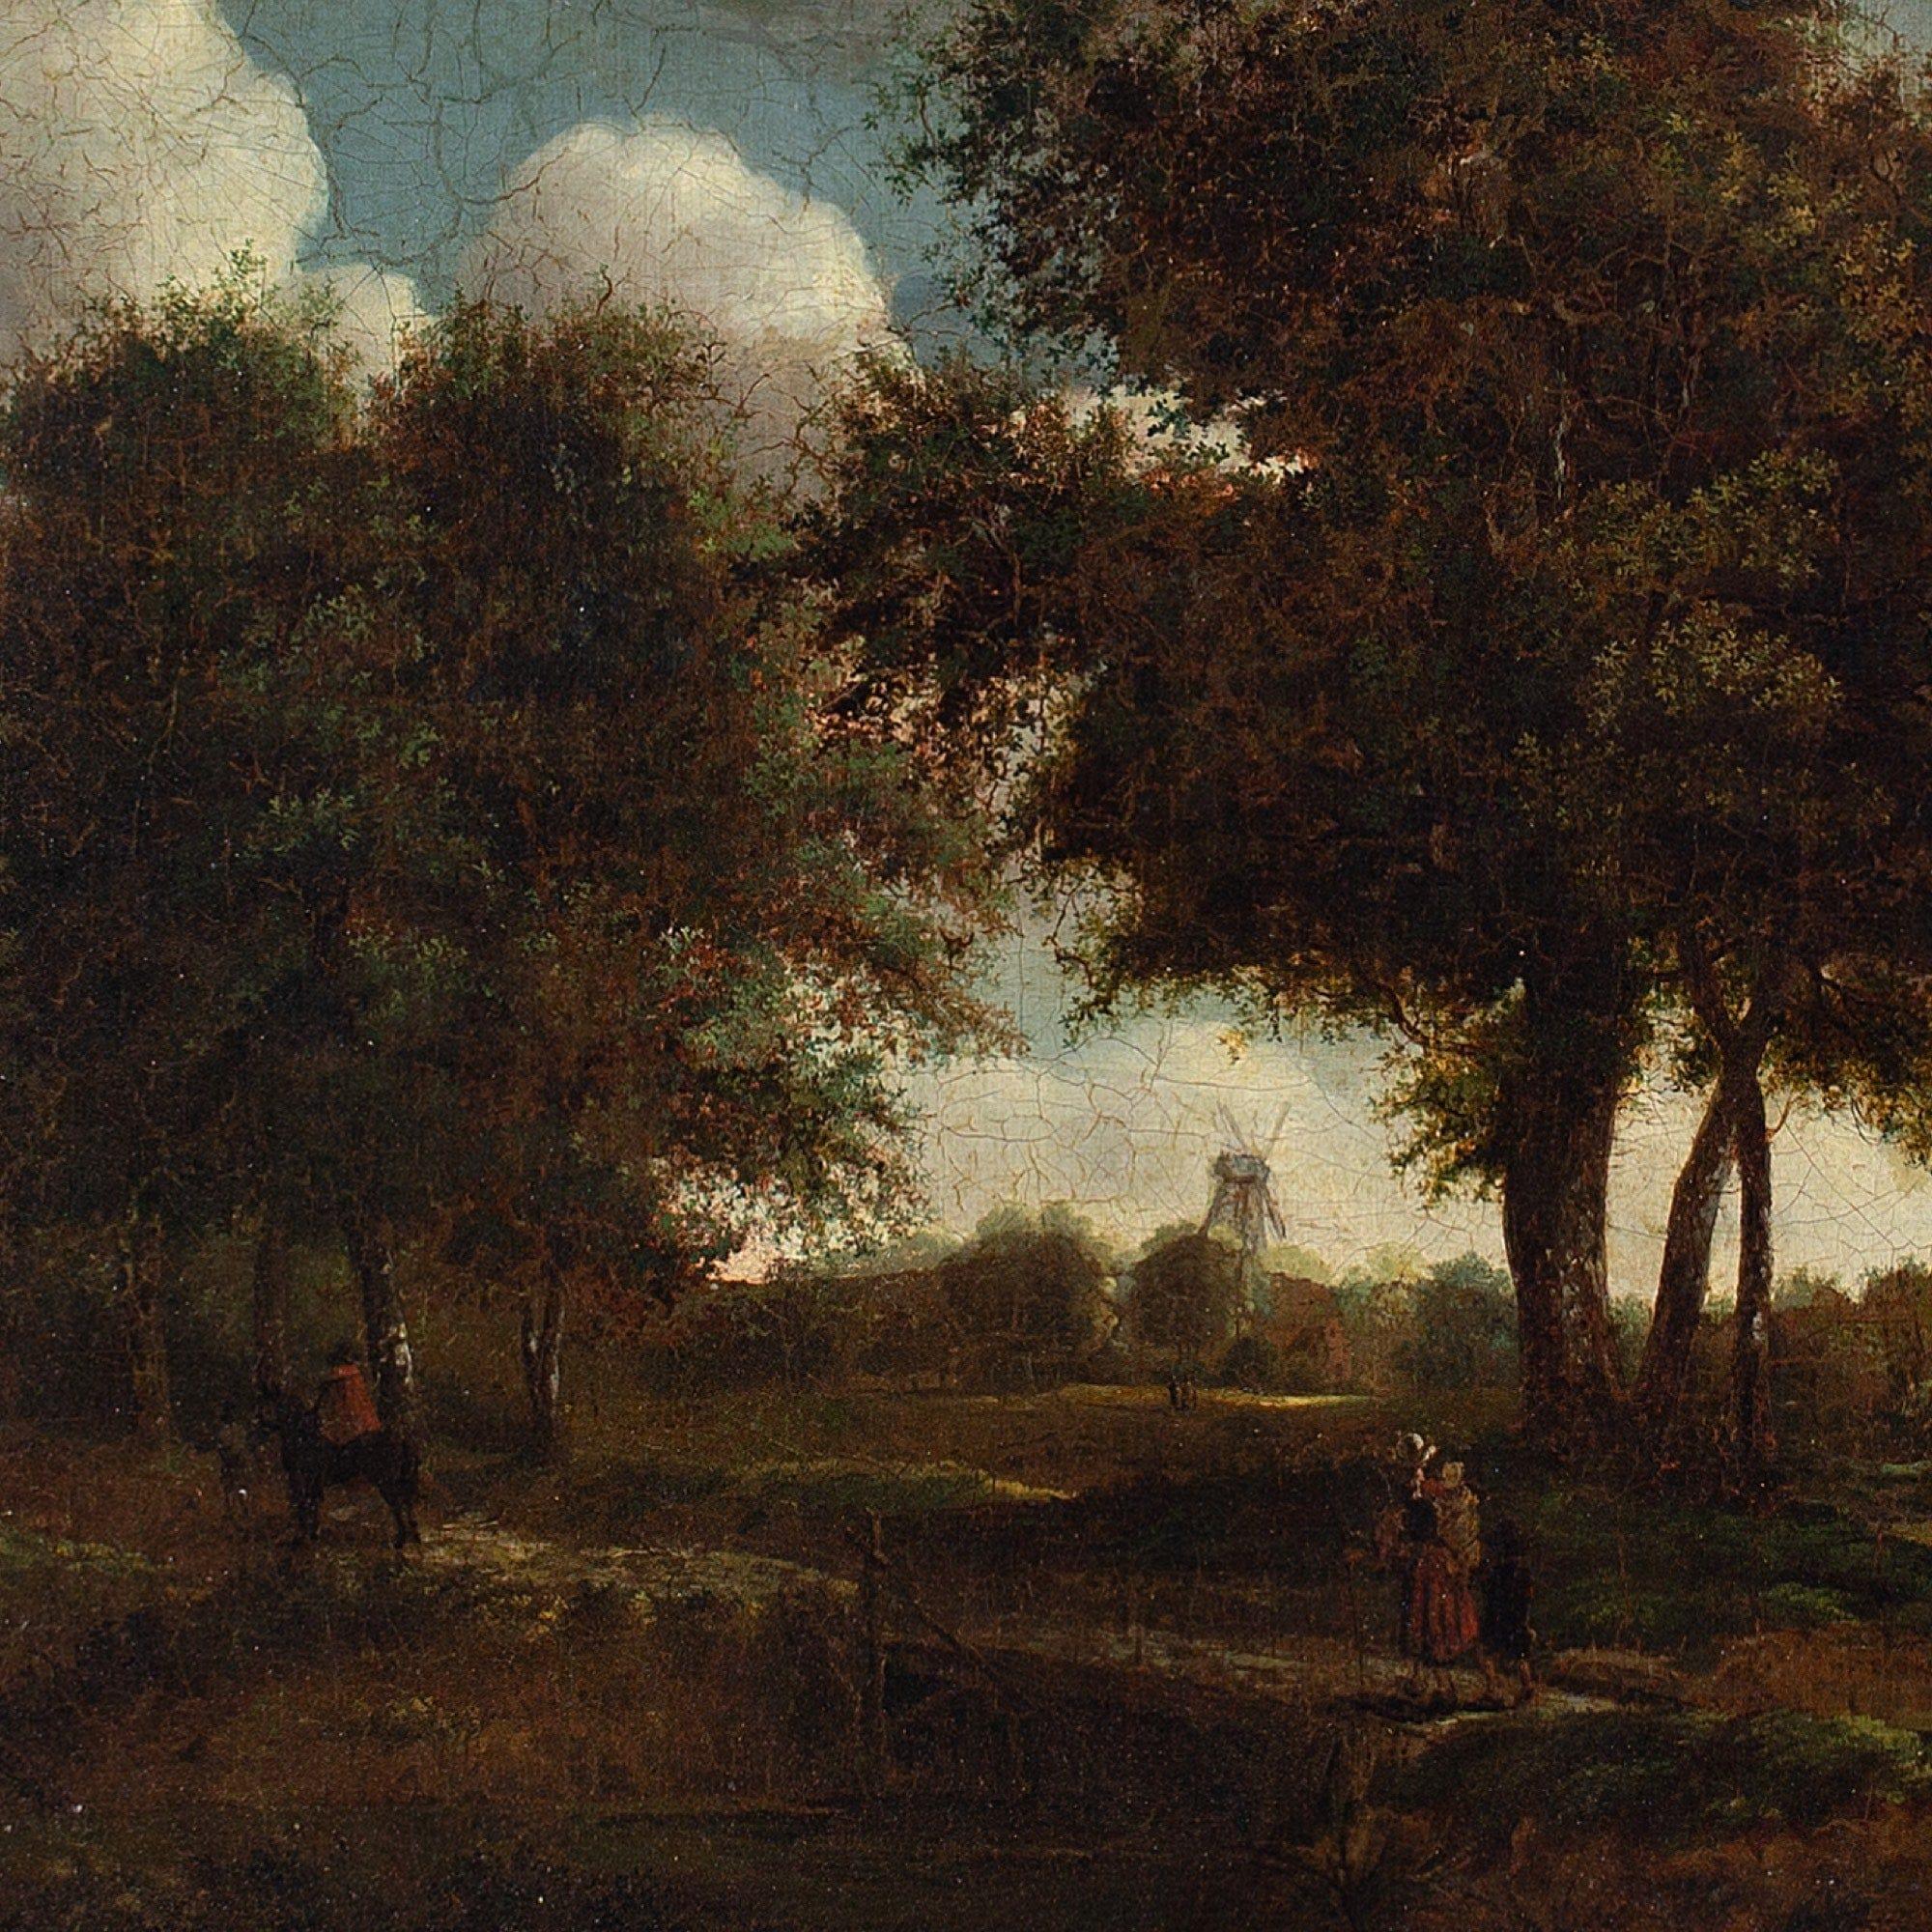 Cette peinture à l'huile de l'école néerlandaise du début du XIXe siècle représente une famille voyageant le long d'un chemin de campagne dans une zone boisée. Les personnages sont habillés en vêtements néerlandais ou flamands du XVIIe siècle.

Au